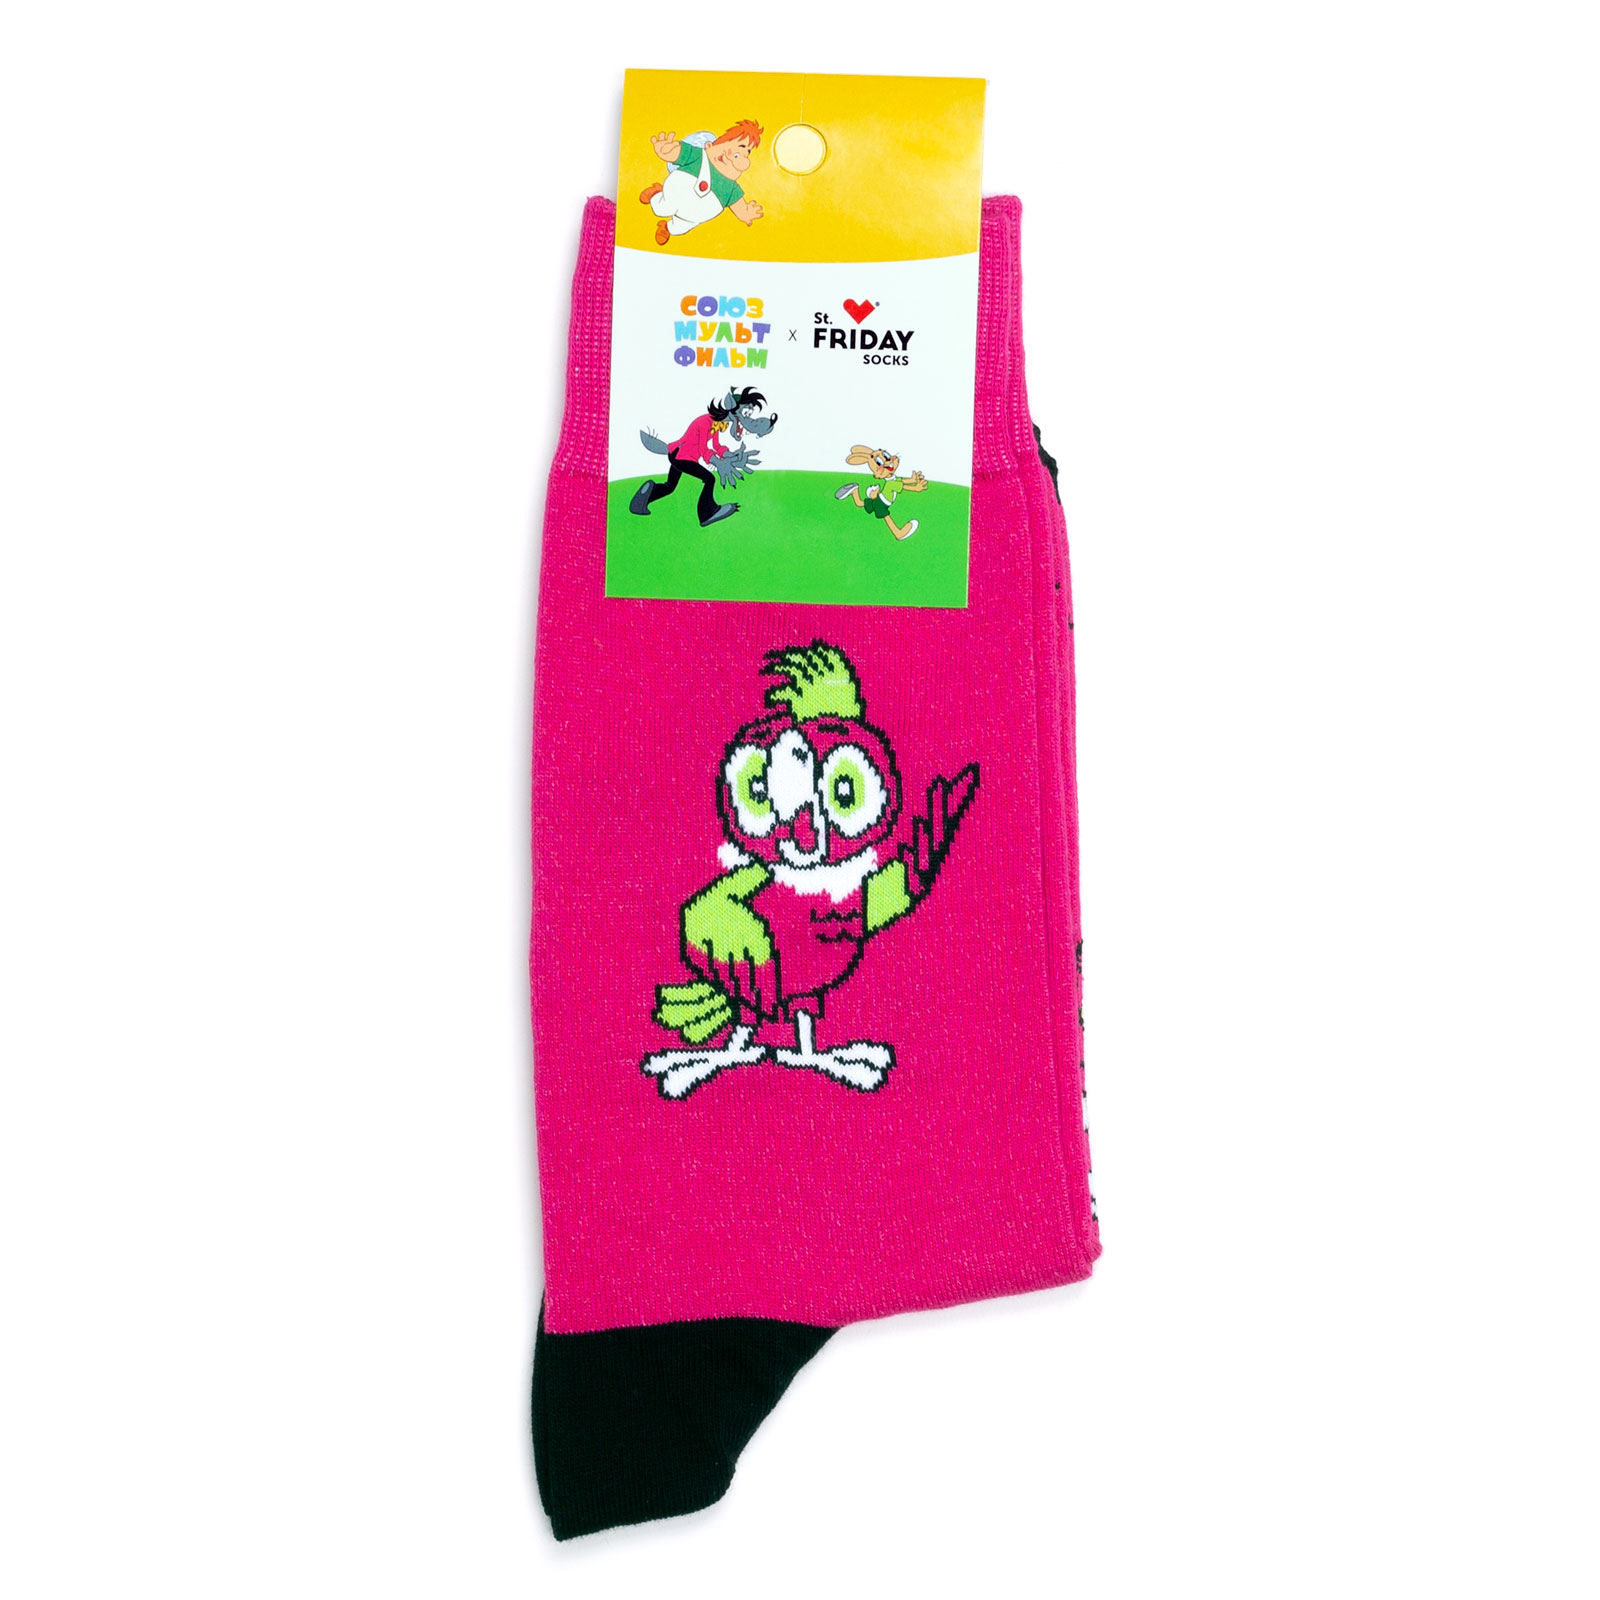 Носки с рисунками St.Friday Socks x Союзмультфильм - Свободу попугаям 38-41